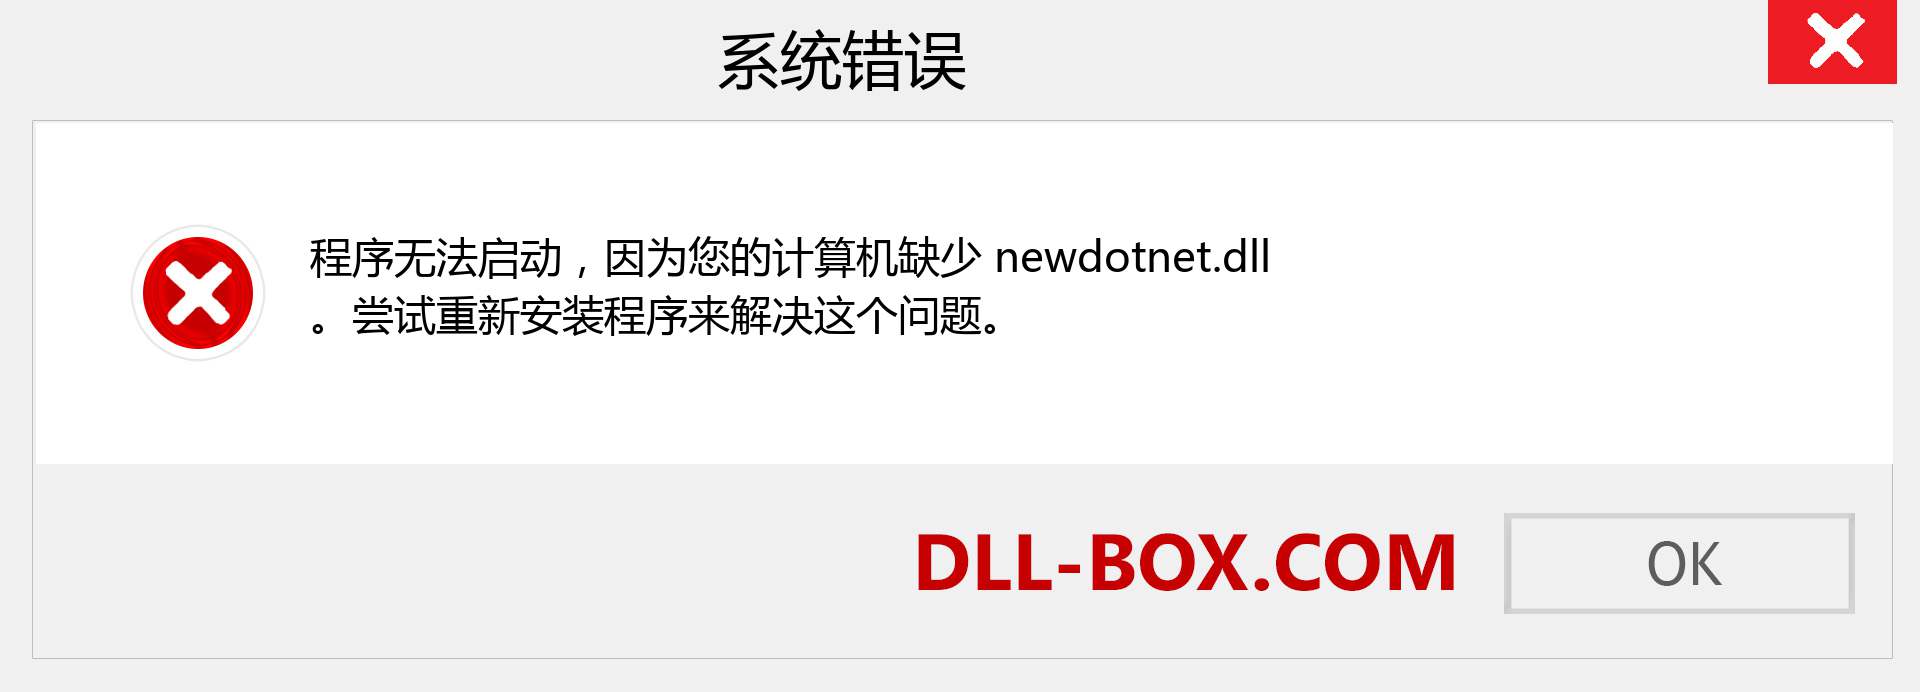 newdotnet.dll 文件丢失？。 适用于 Windows 7、8、10 的下载 - 修复 Windows、照片、图像上的 newdotnet dll 丢失错误